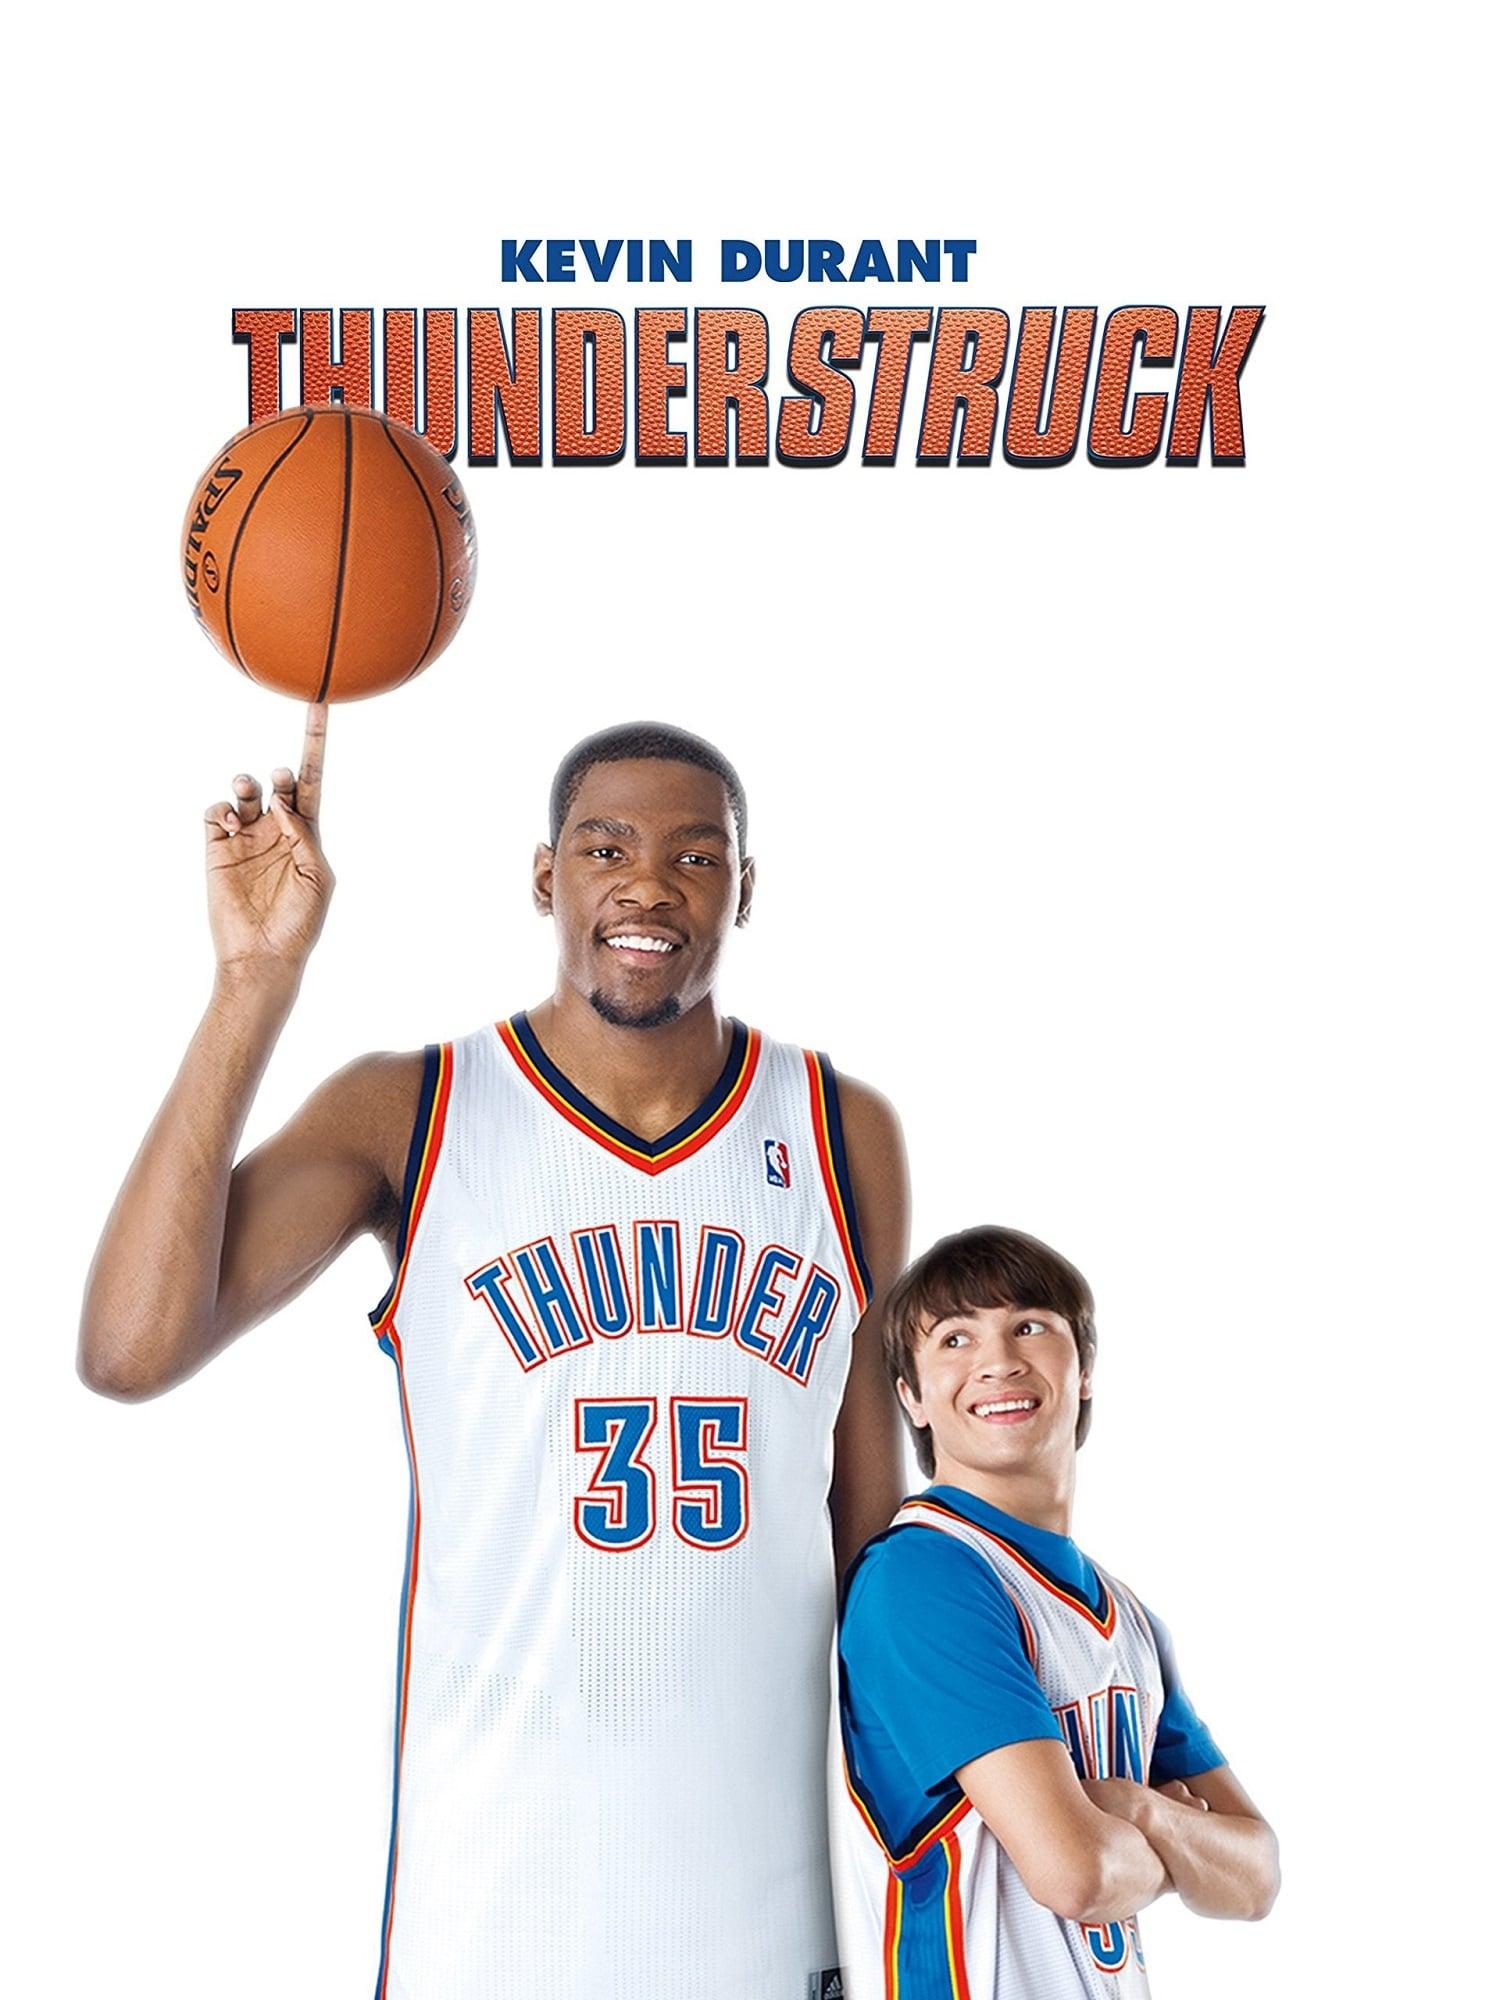 Thunderstruck poster